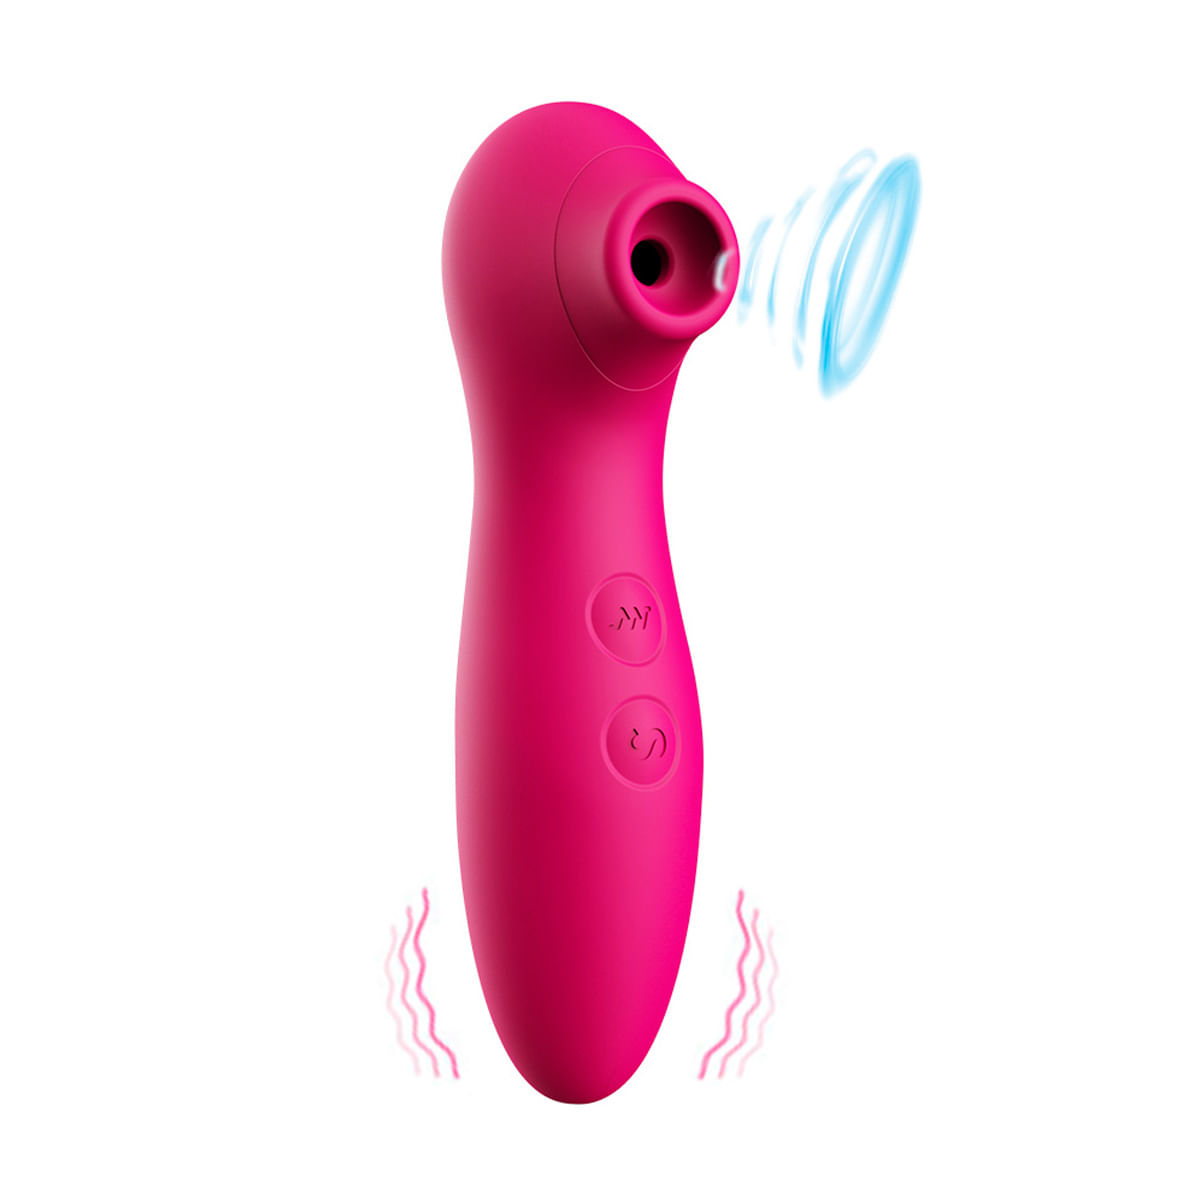 Estimulador de Clitoris com 7 Modos de Vibração e Pulsação Vip Mix